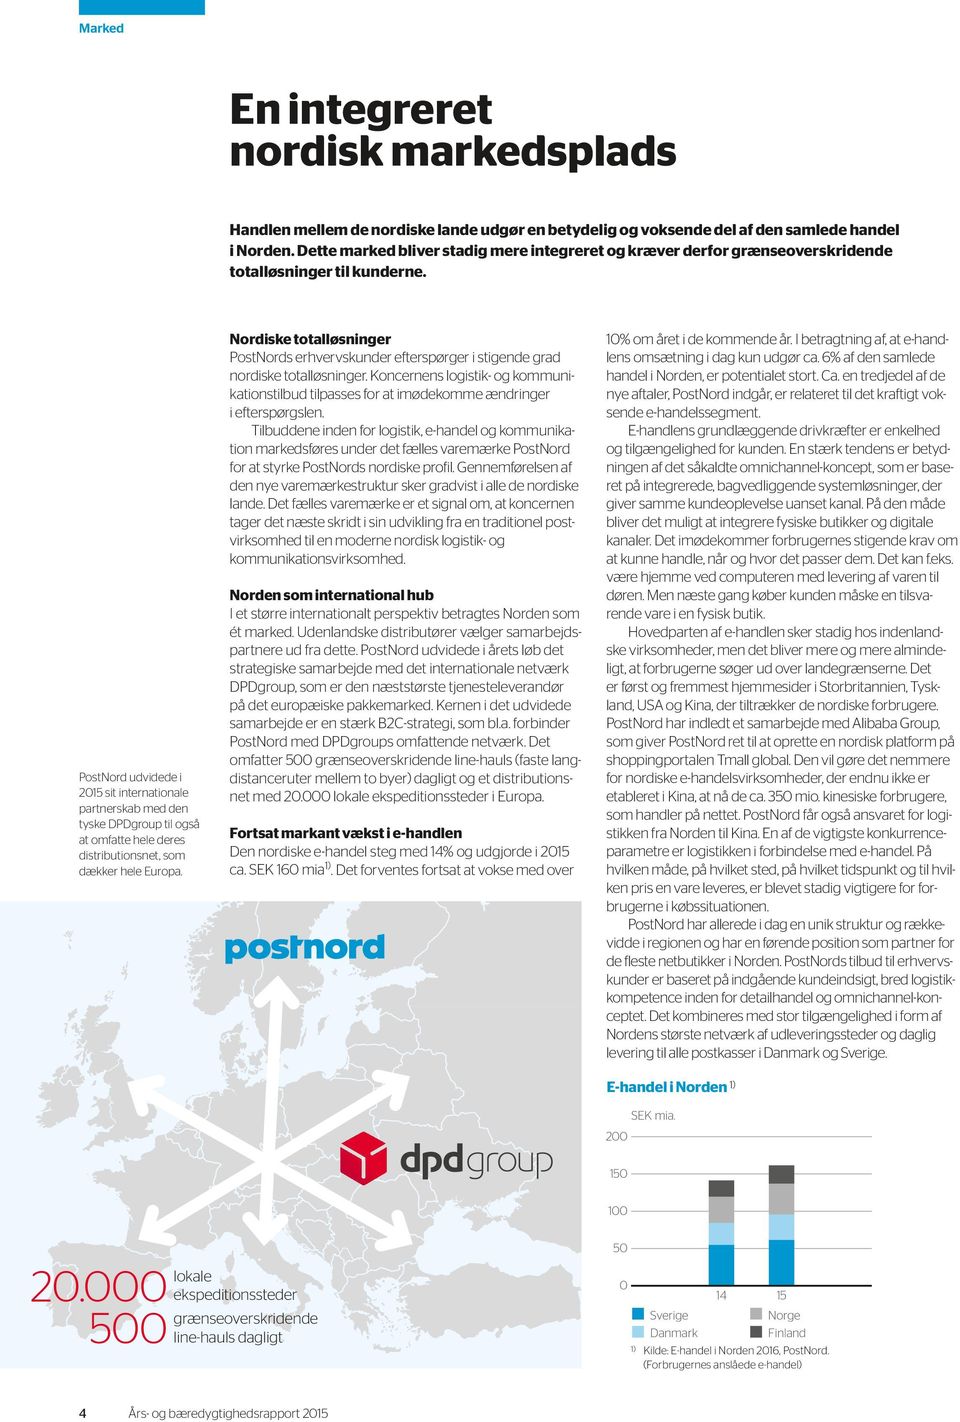 PostNord udvidede i 2015 sit internationale partnerskab med den tyske DPDgroup til også at omfatte hele deres distributionsnet, som dækker hele Europa.